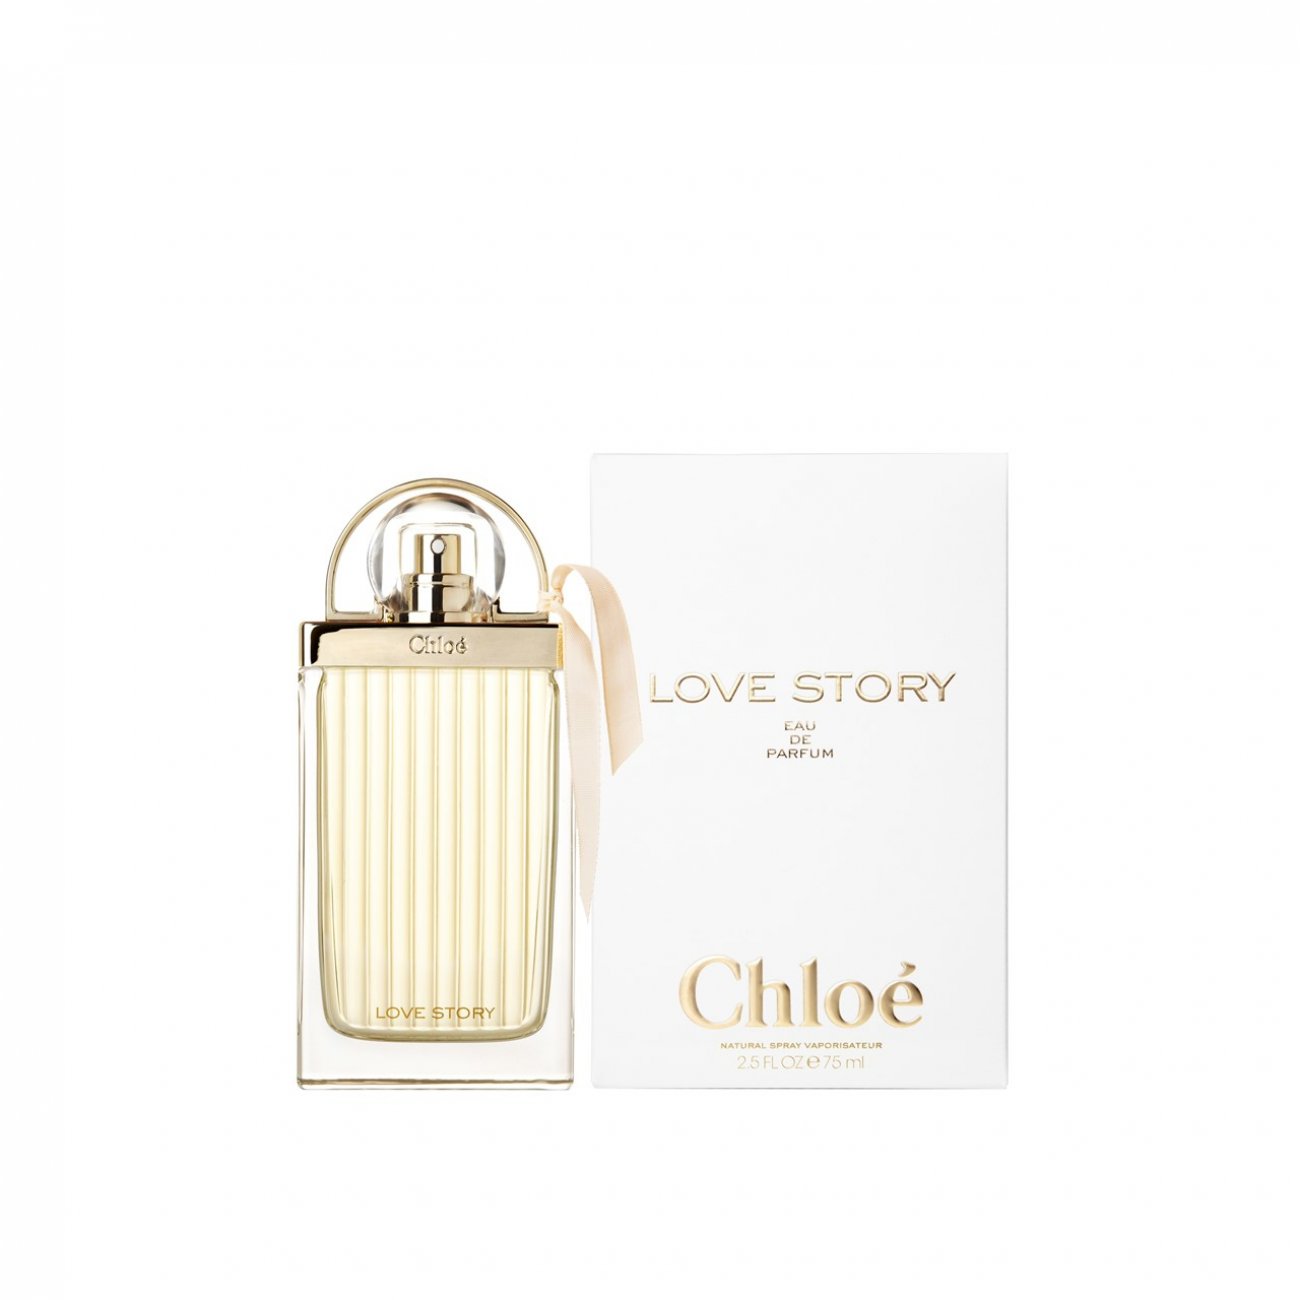 deres beslutte præambel Buy Chloé Love Story Eau de Parfum · USA